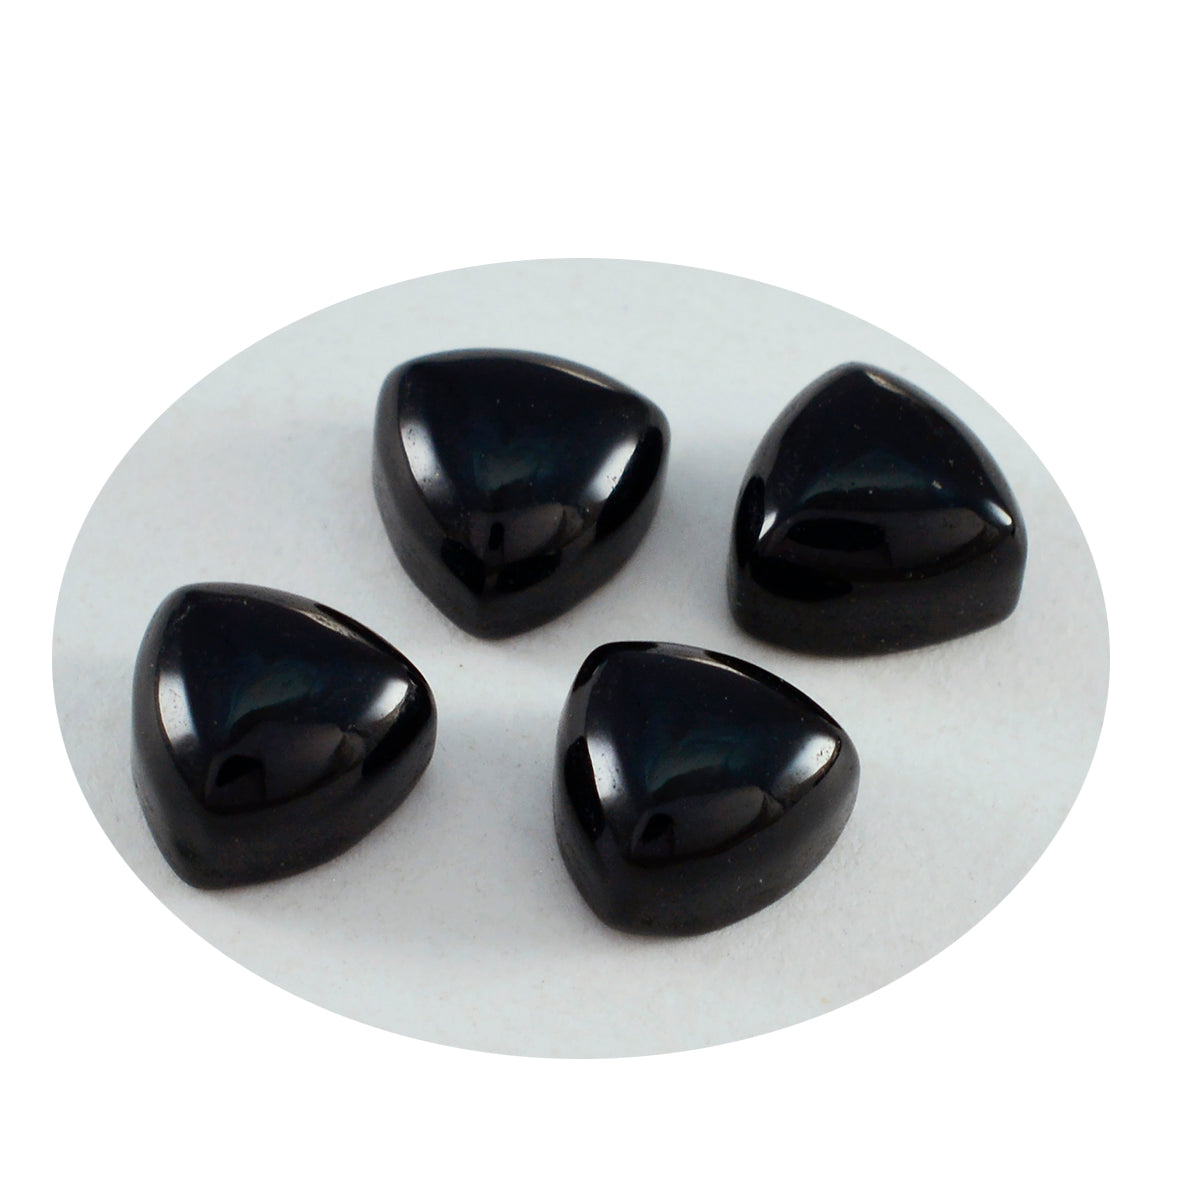 Riyogems 1 pieza cabujón de ónix negro 9x9 mm forma de trillón piedra de calidad A+